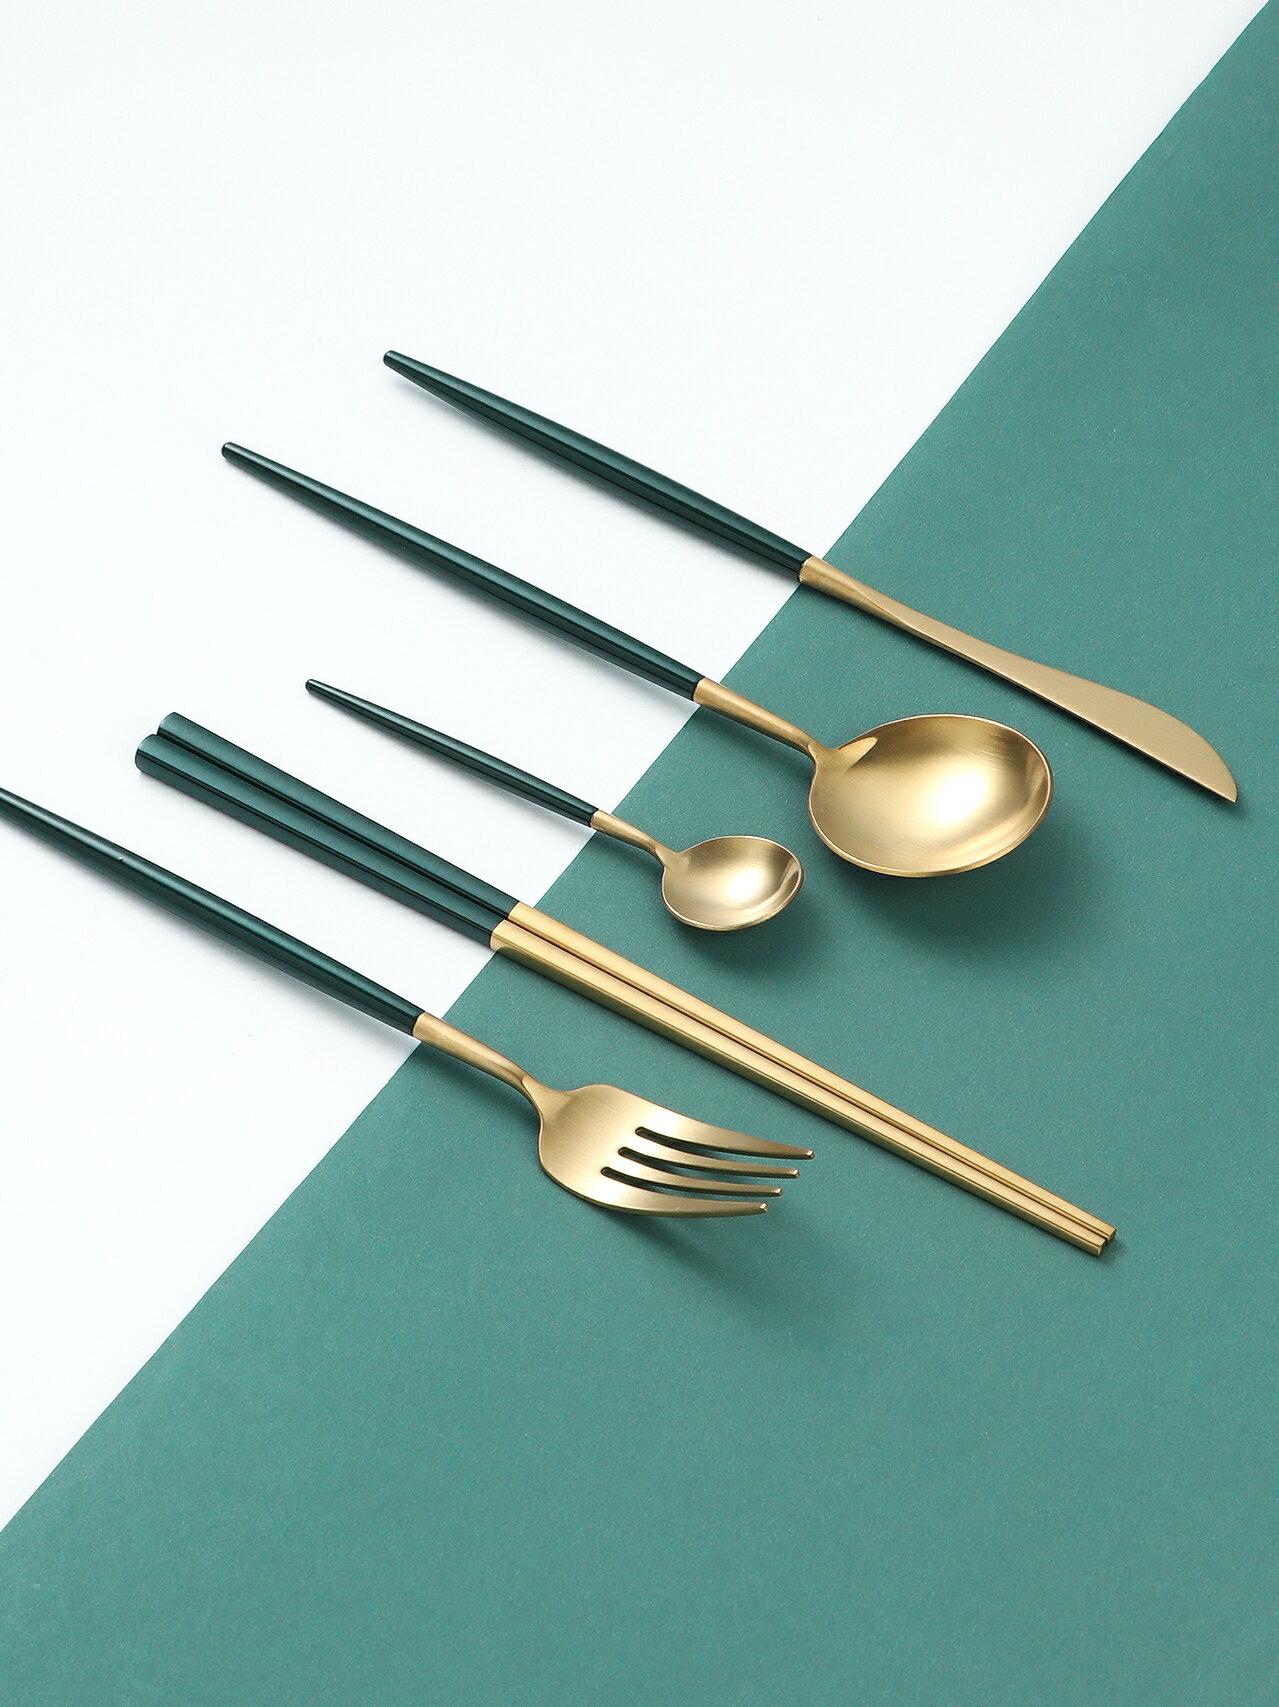 304不銹鋼刀叉勺北歐ins風網紅牛排西餐餐具套裝家用叉子勺子筷子